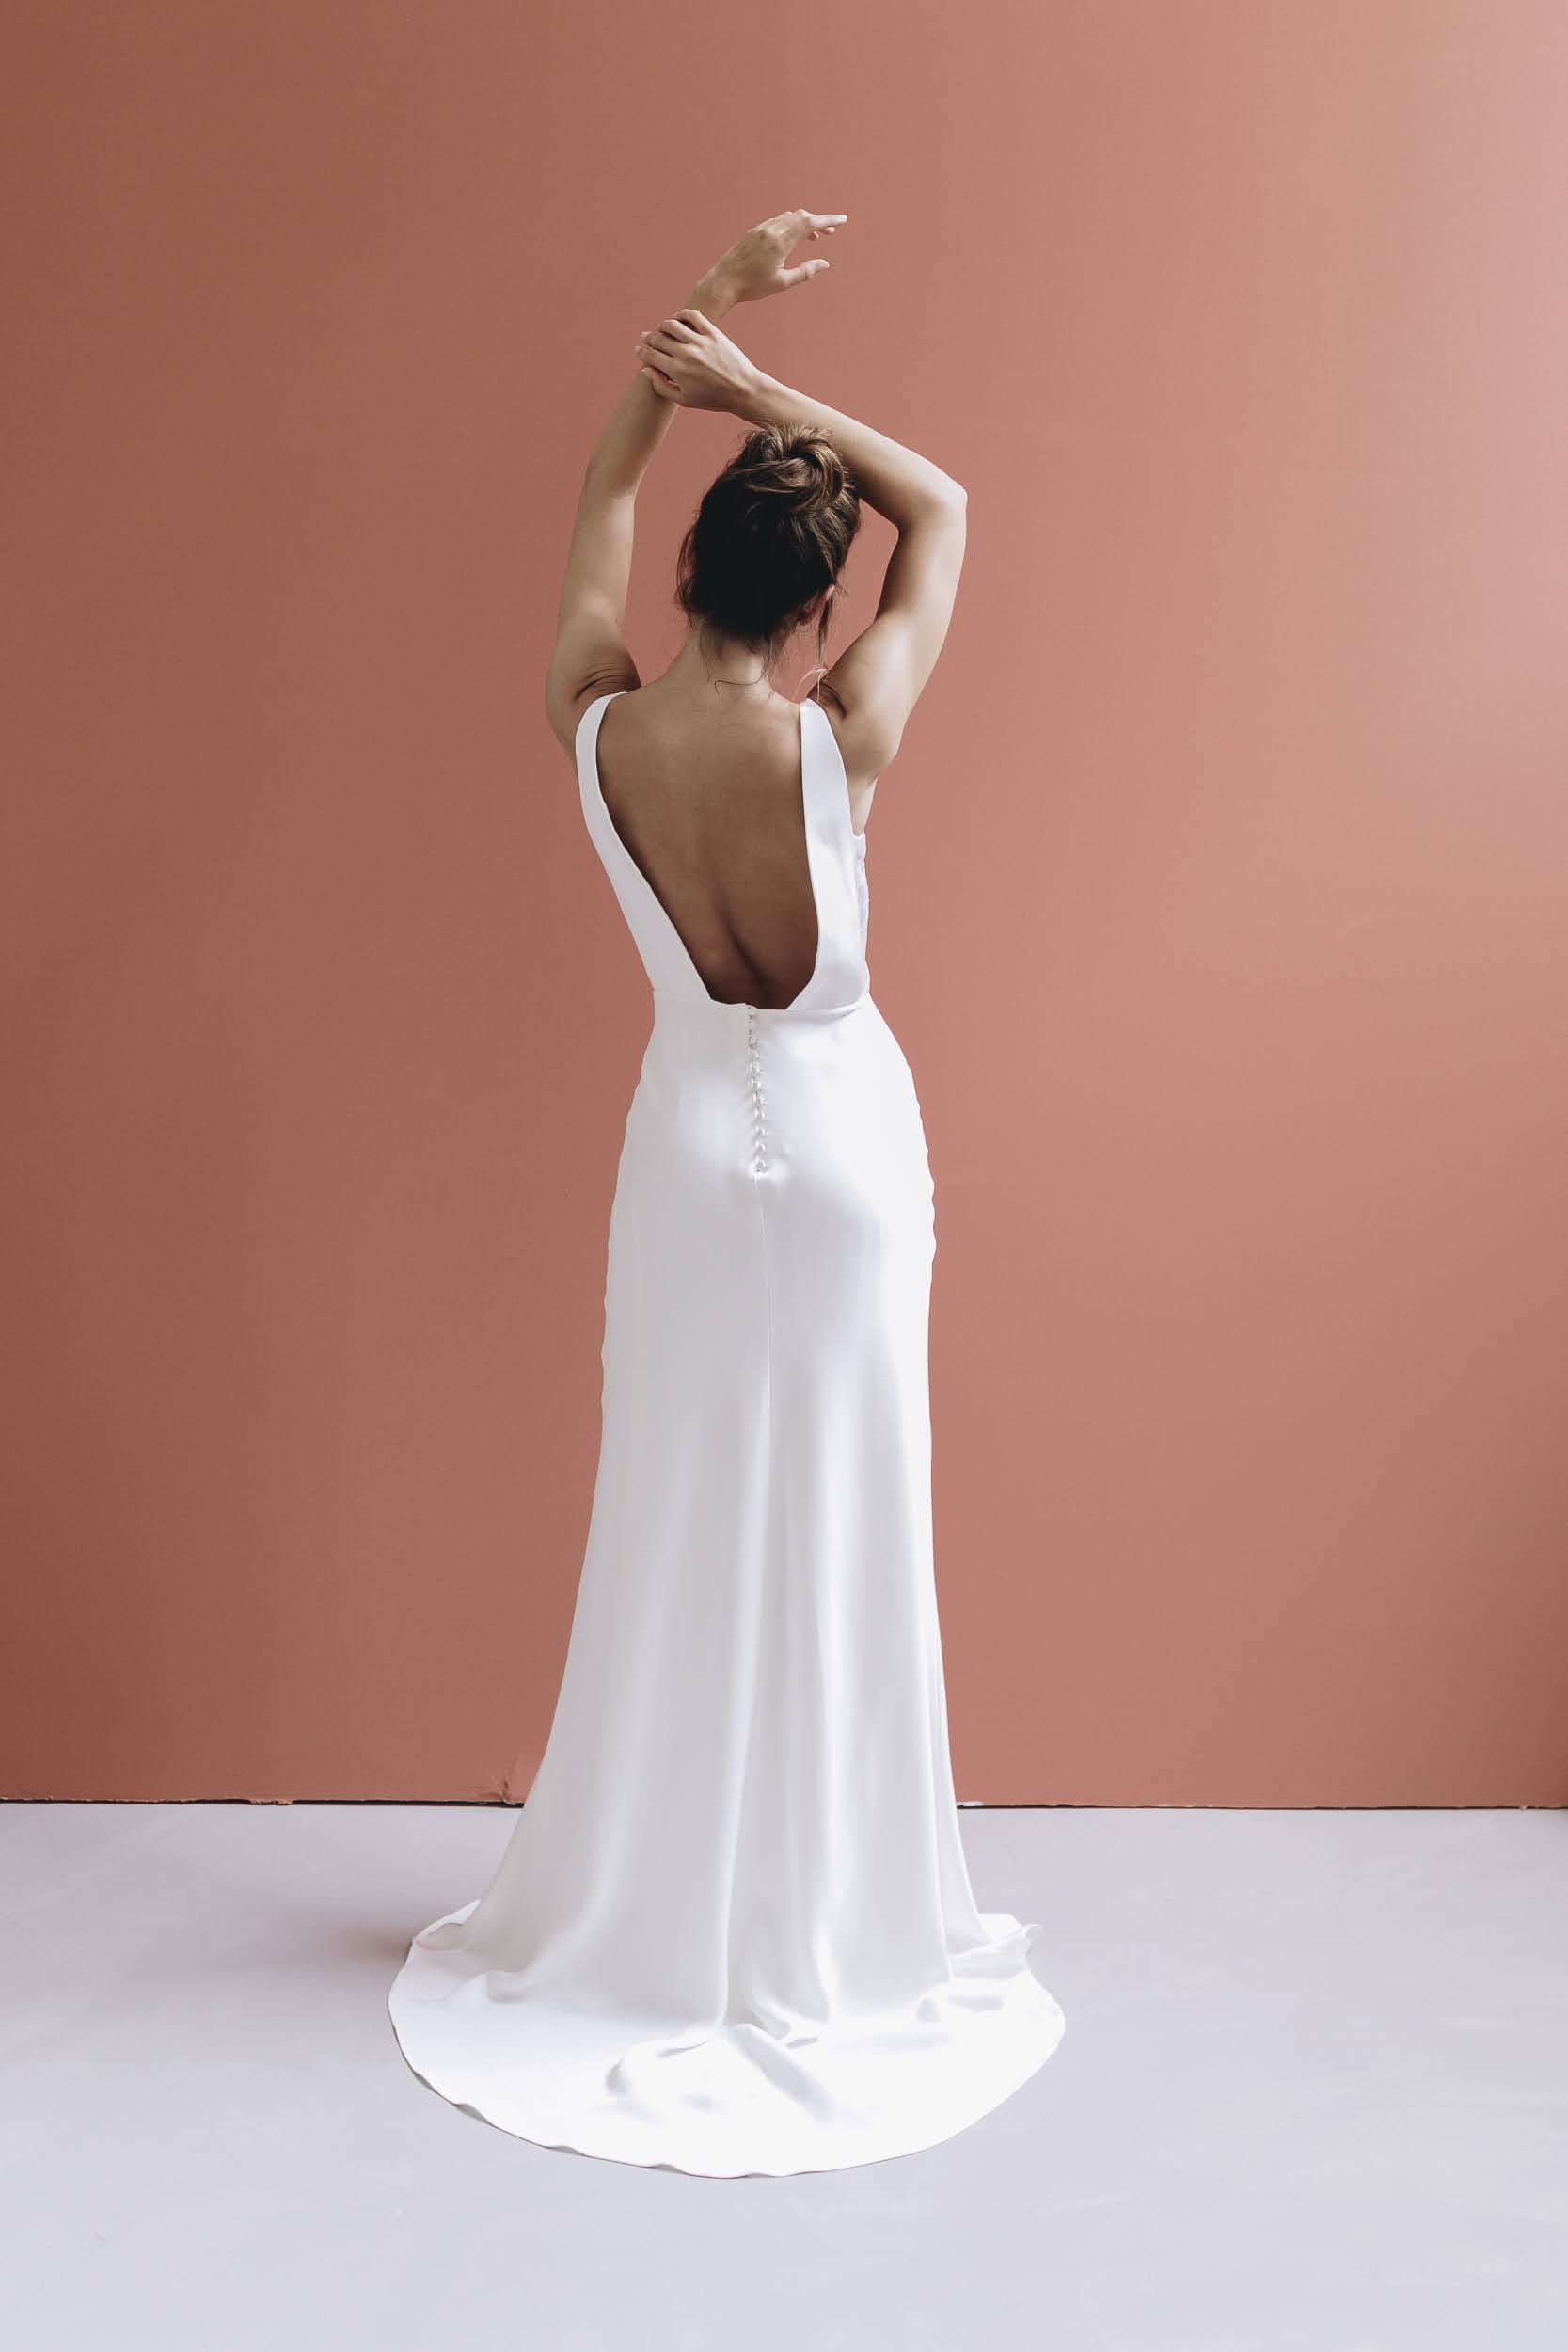 Anne de Lafforest - Robes de mariée - Collection 2021 - Photos : Aude Lemaitre - Blog mariage : La mariée aux pieds nus